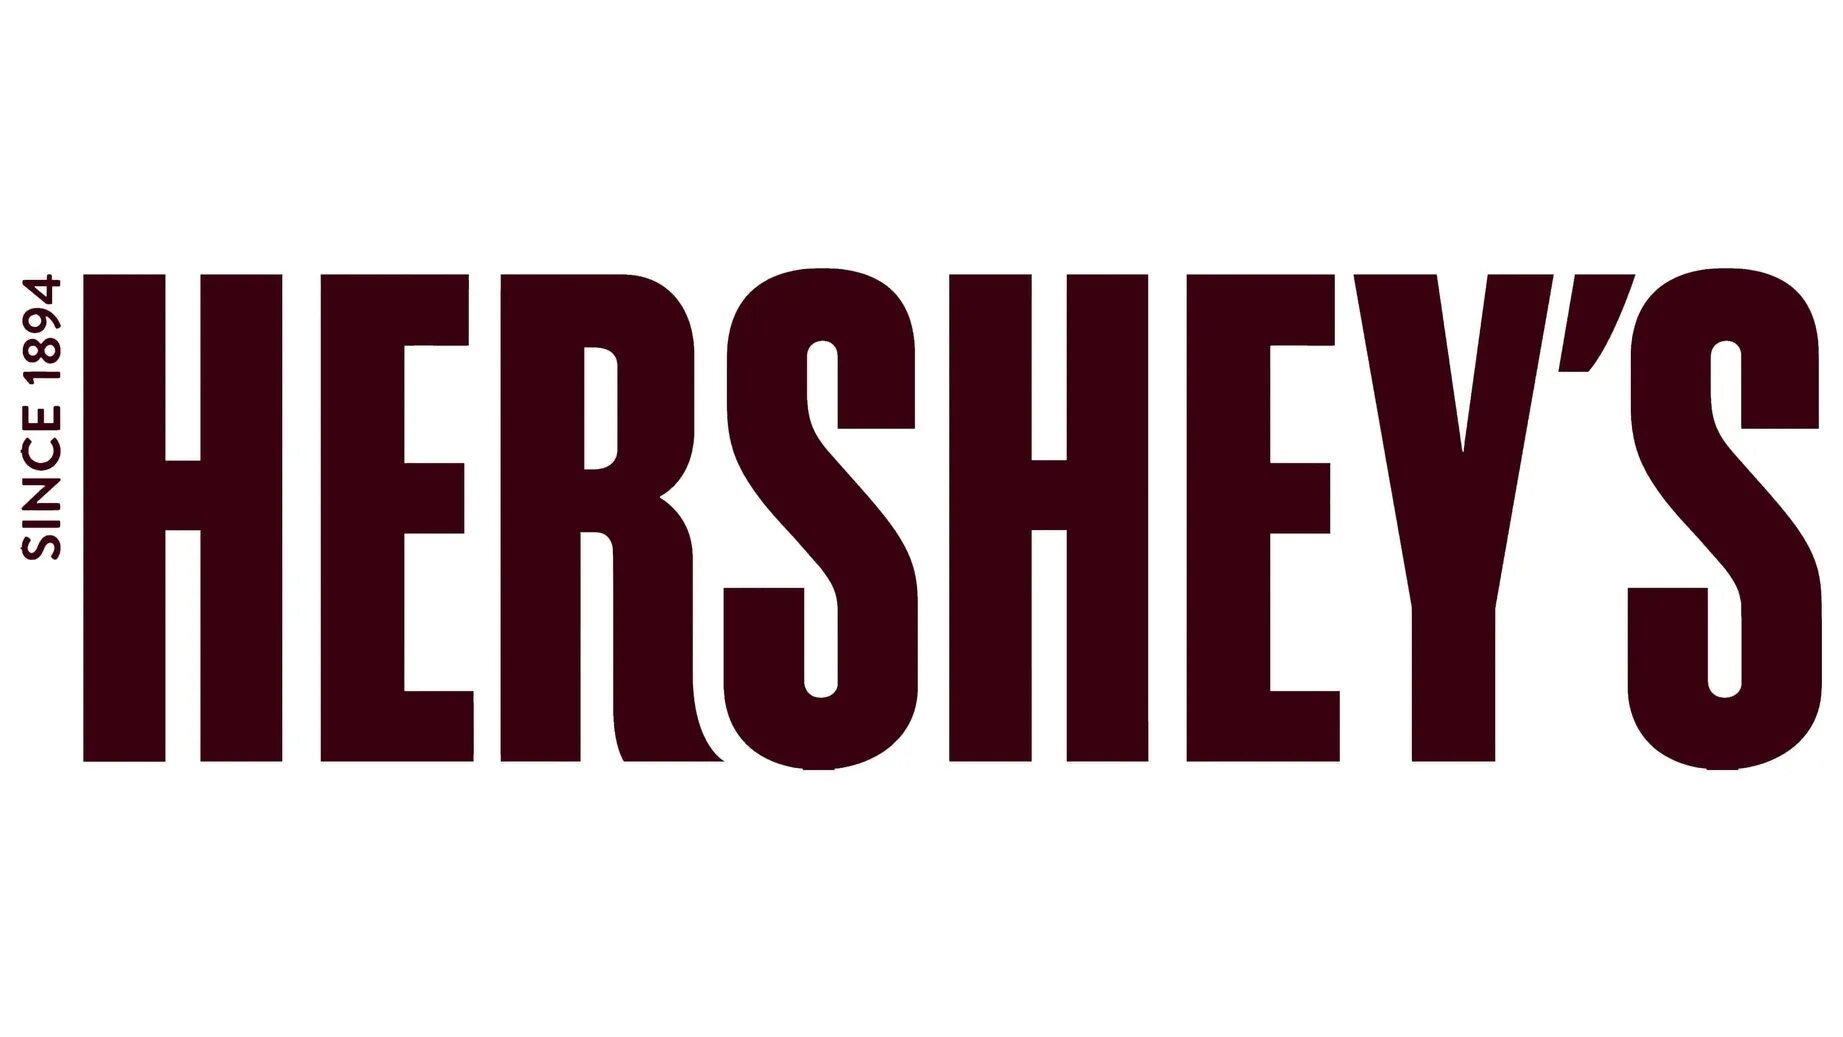 The hershey company. Hersheys шоколад logo. Hershey co логотип. Hershey's brand.